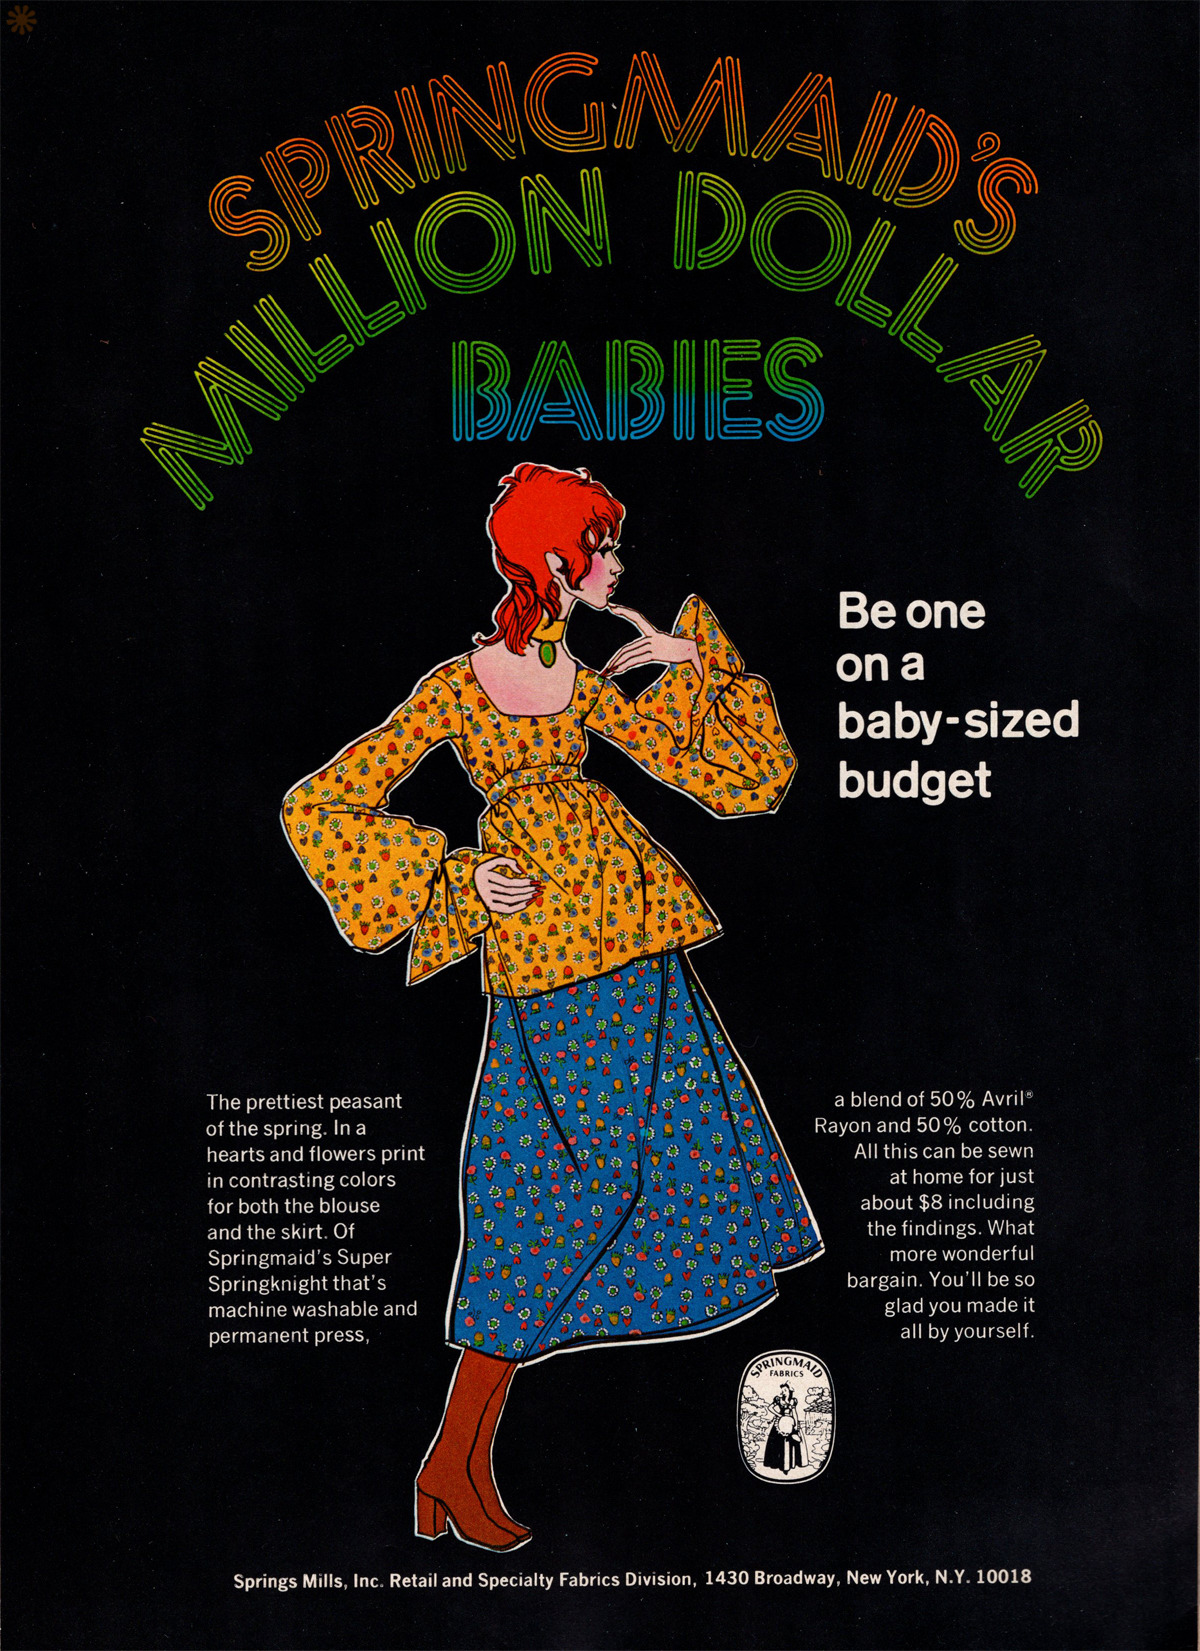 Springmaid Fabrics - published in Co-Ed - February 1971